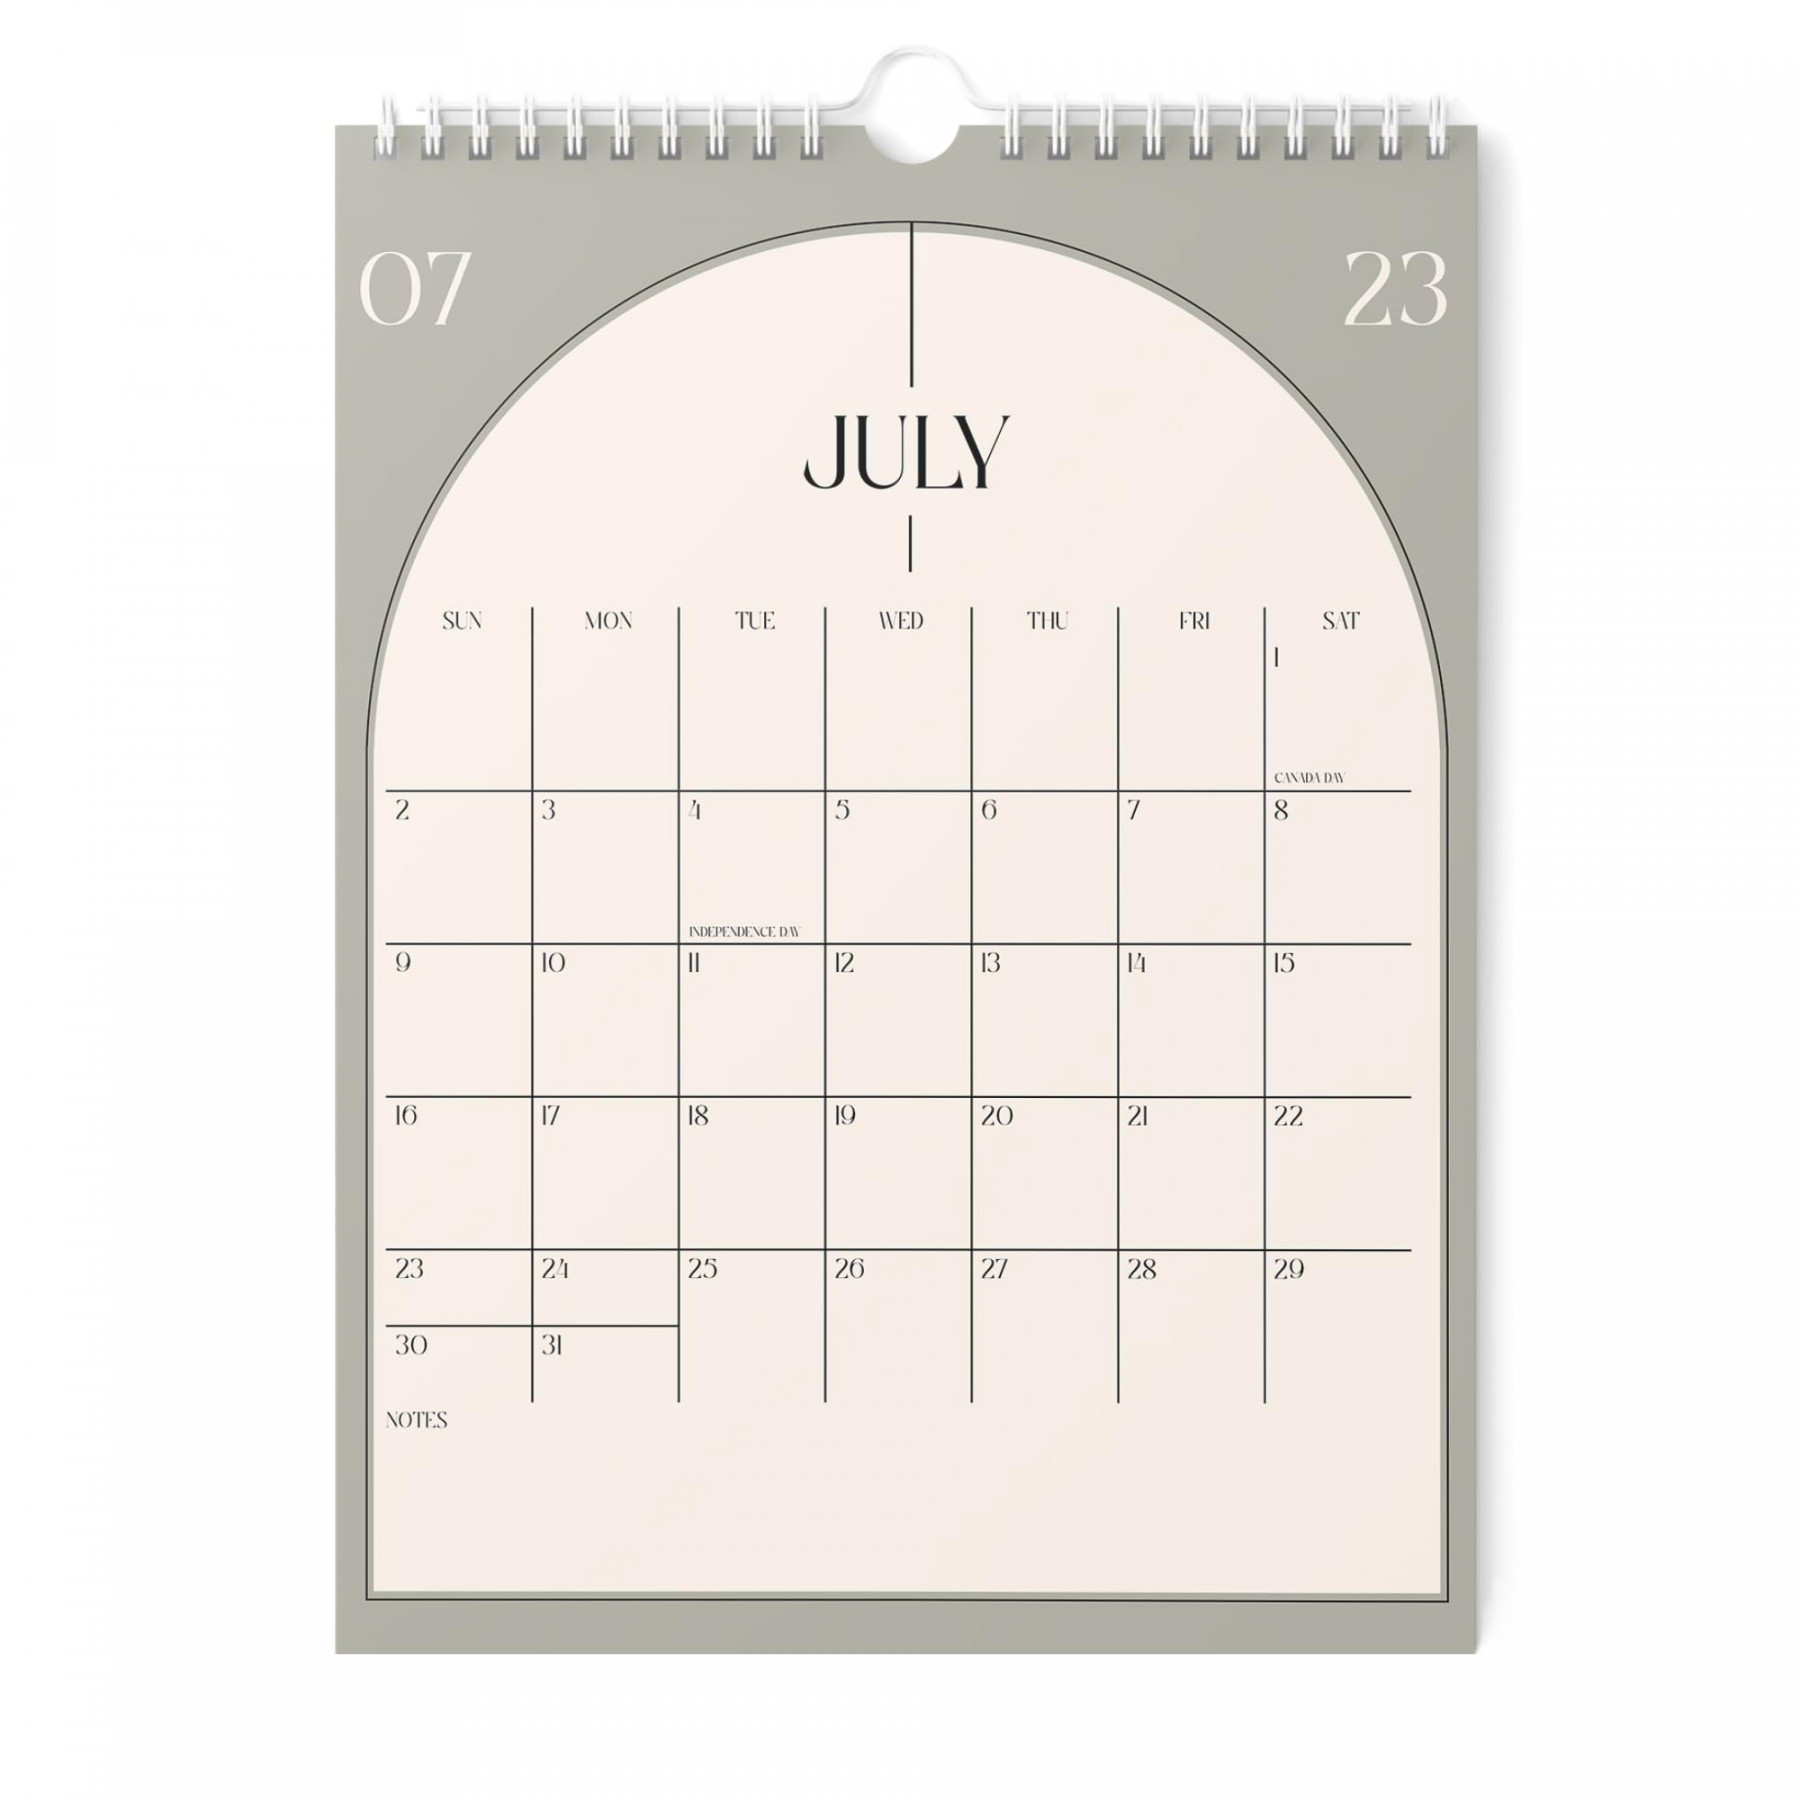 Calendar - - Vertical .x  Wall Calendar Runs Until December  20 - Easy Planning with See more Calendar - - Vertical